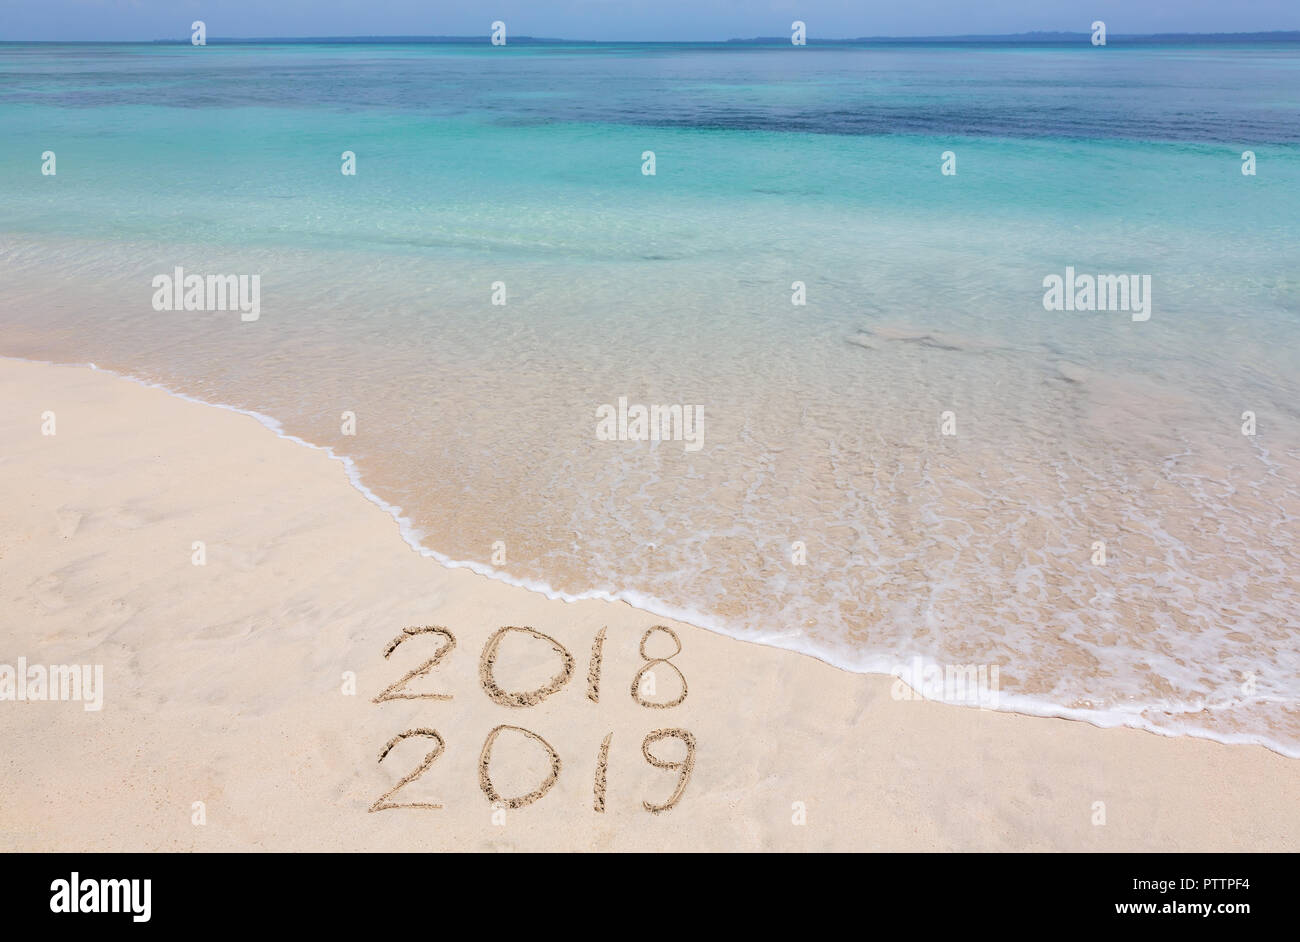 Années 2018 et 2019 sont inscrits sur la plage de sable, archipel Bocas del Toro, PANAMA Banque D'Images